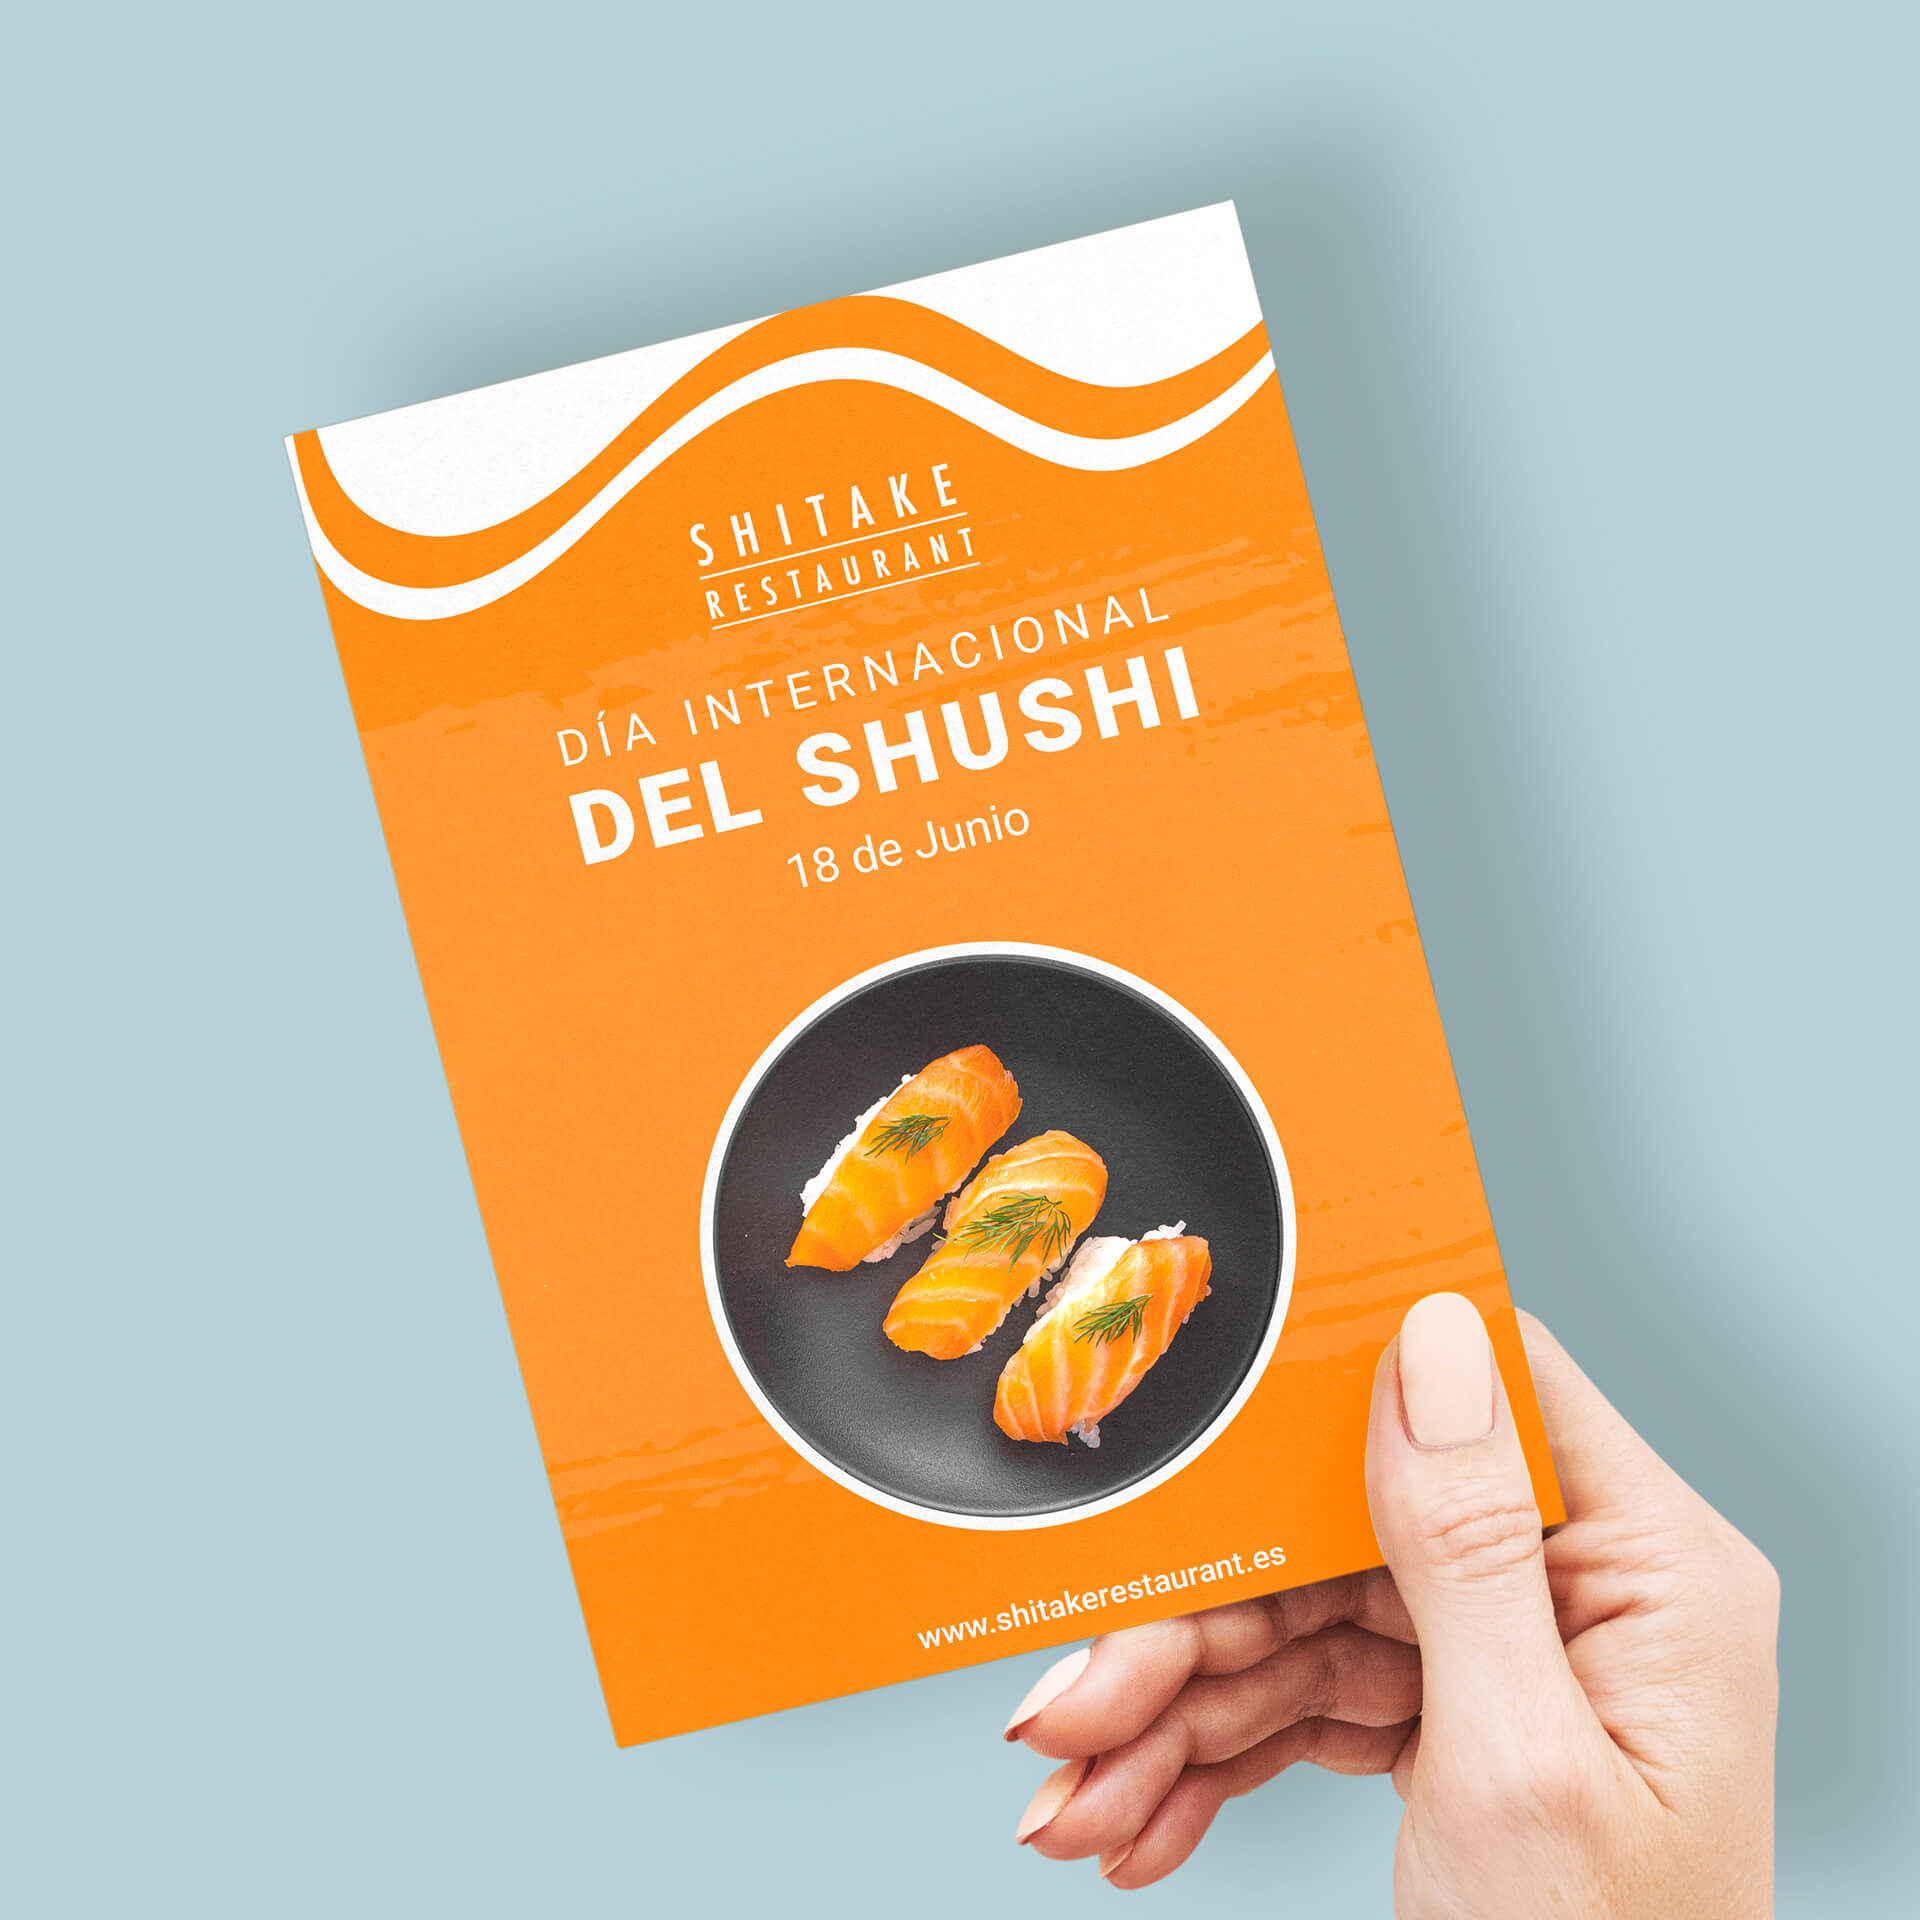 Imagen de un flyer en tamaño aA5, publicitando el día internacional del shushi del restaurante Shitake, sostenido por una mano de mujer.